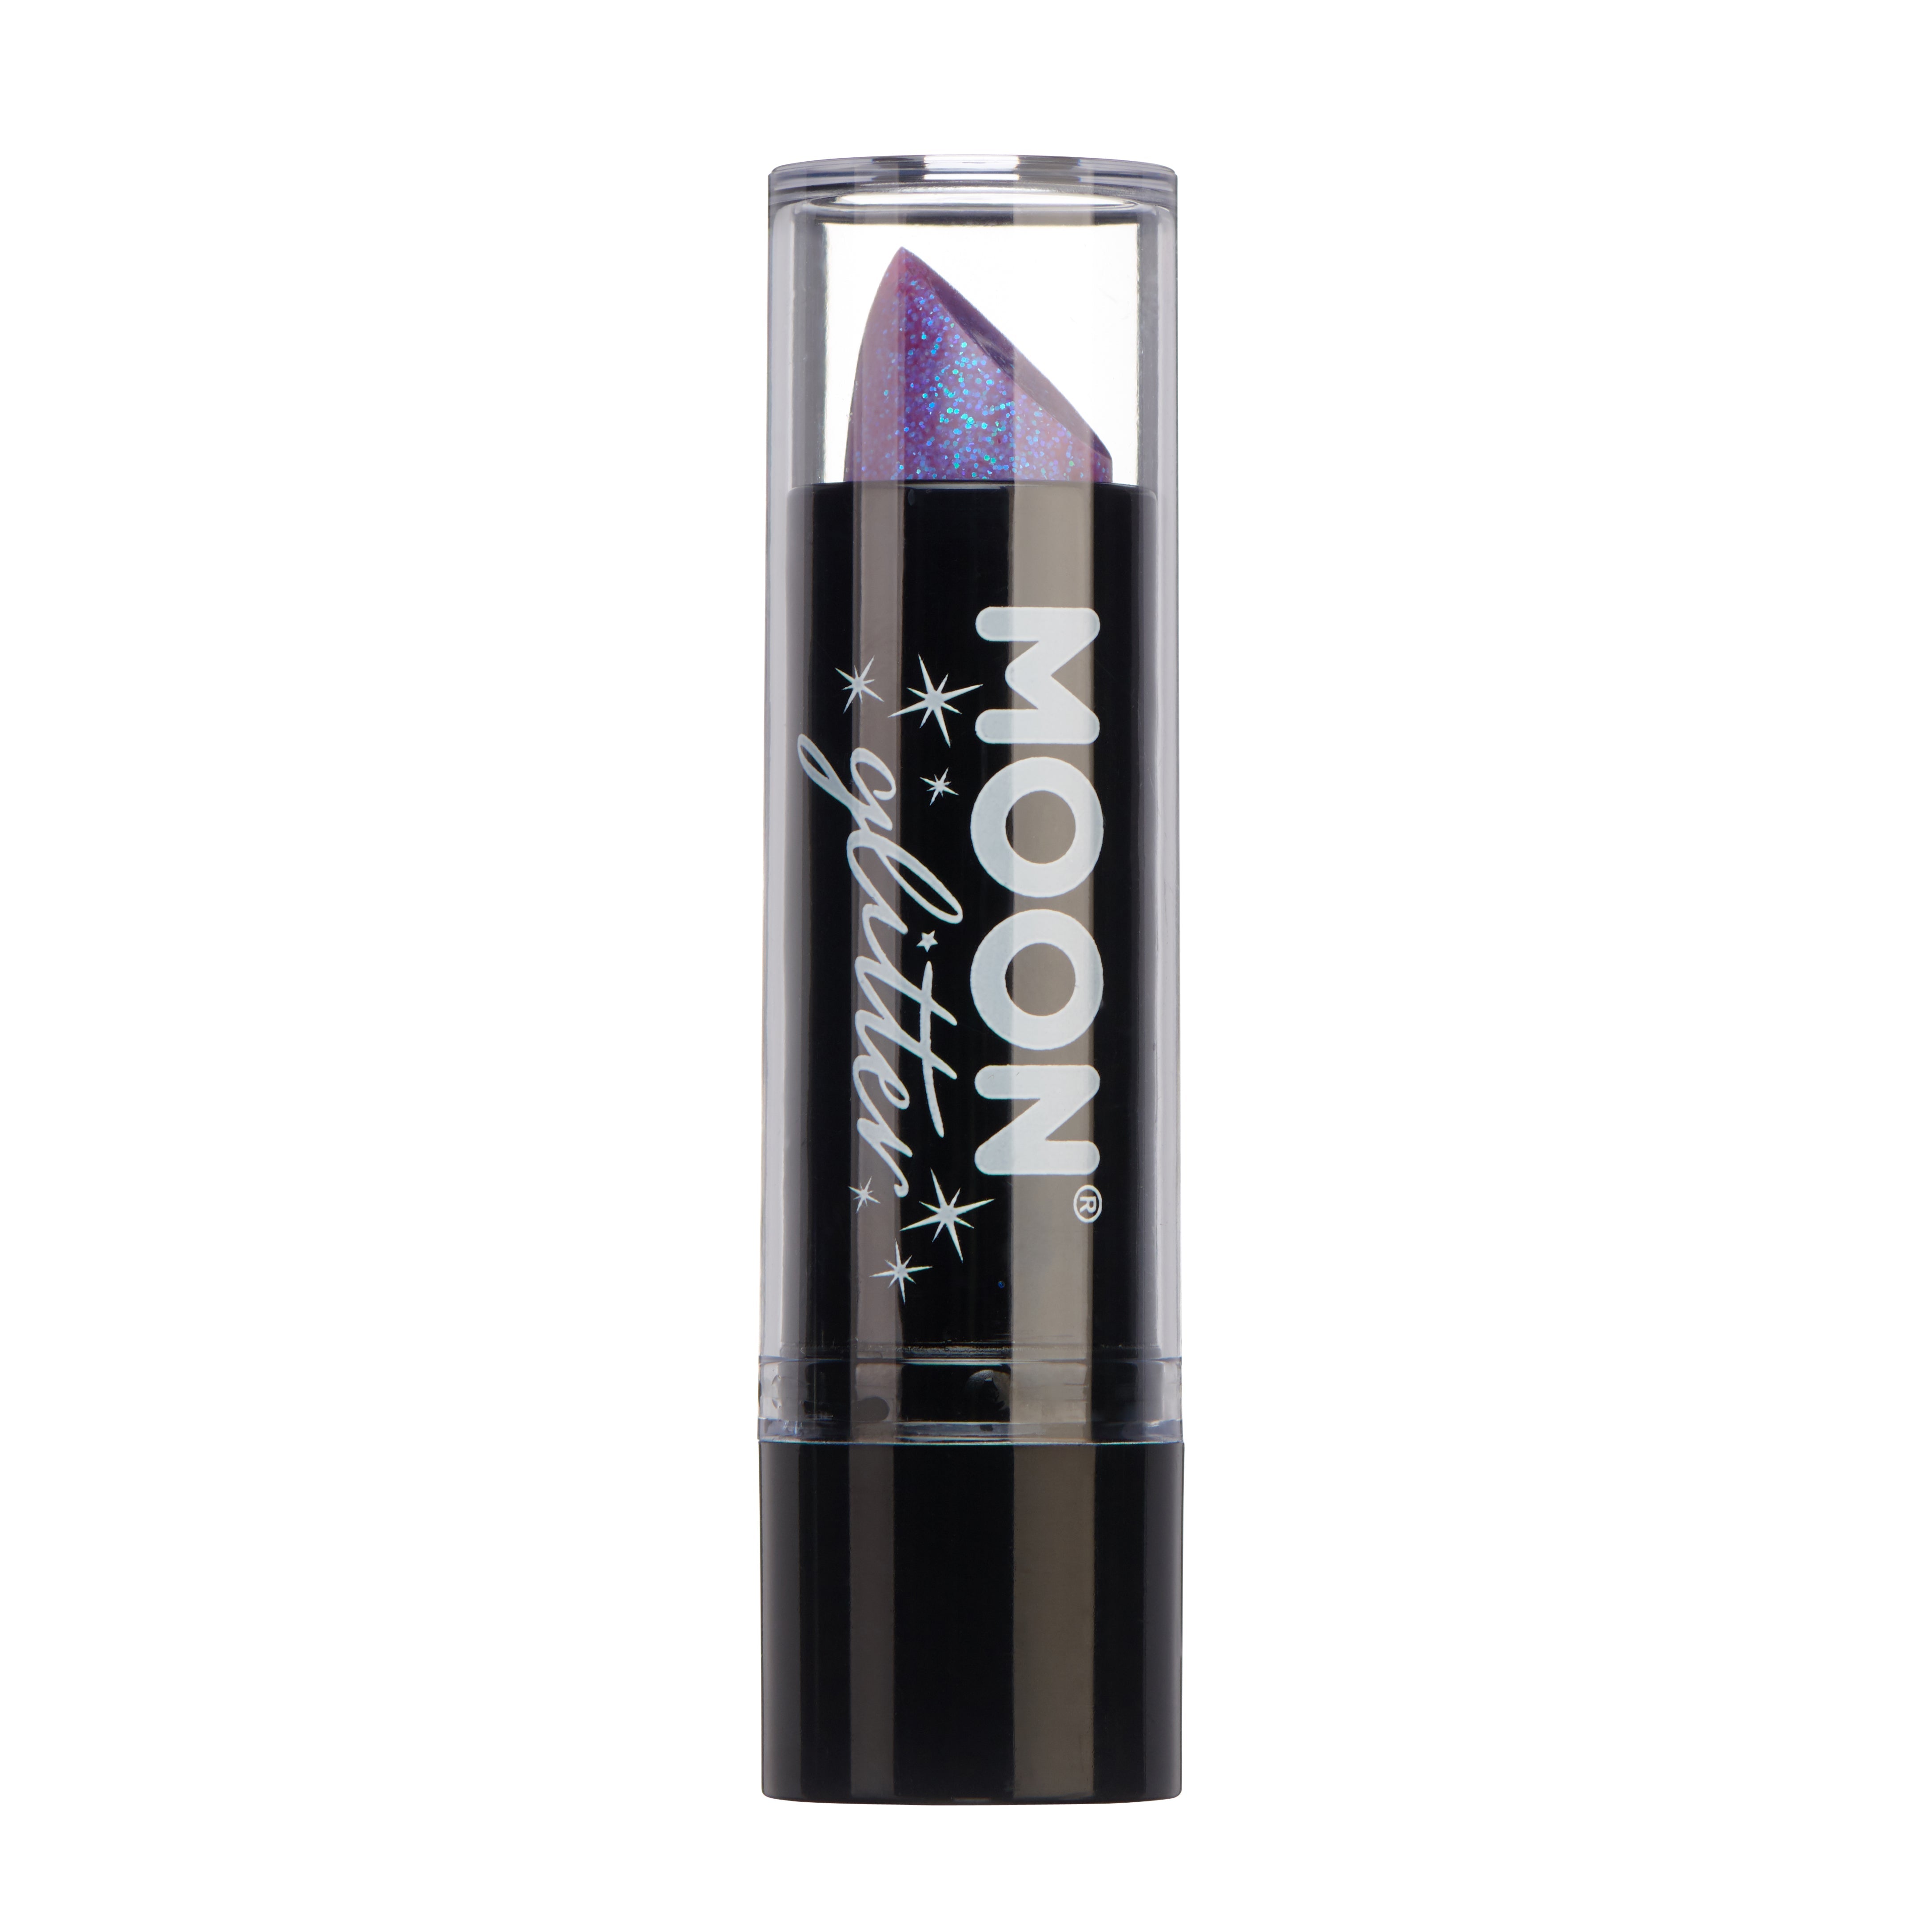 Purple - Iridescent Glitter Lipstick, 5g. Cosmetically certified, FDA & Health Canada compliant and cruelty free.